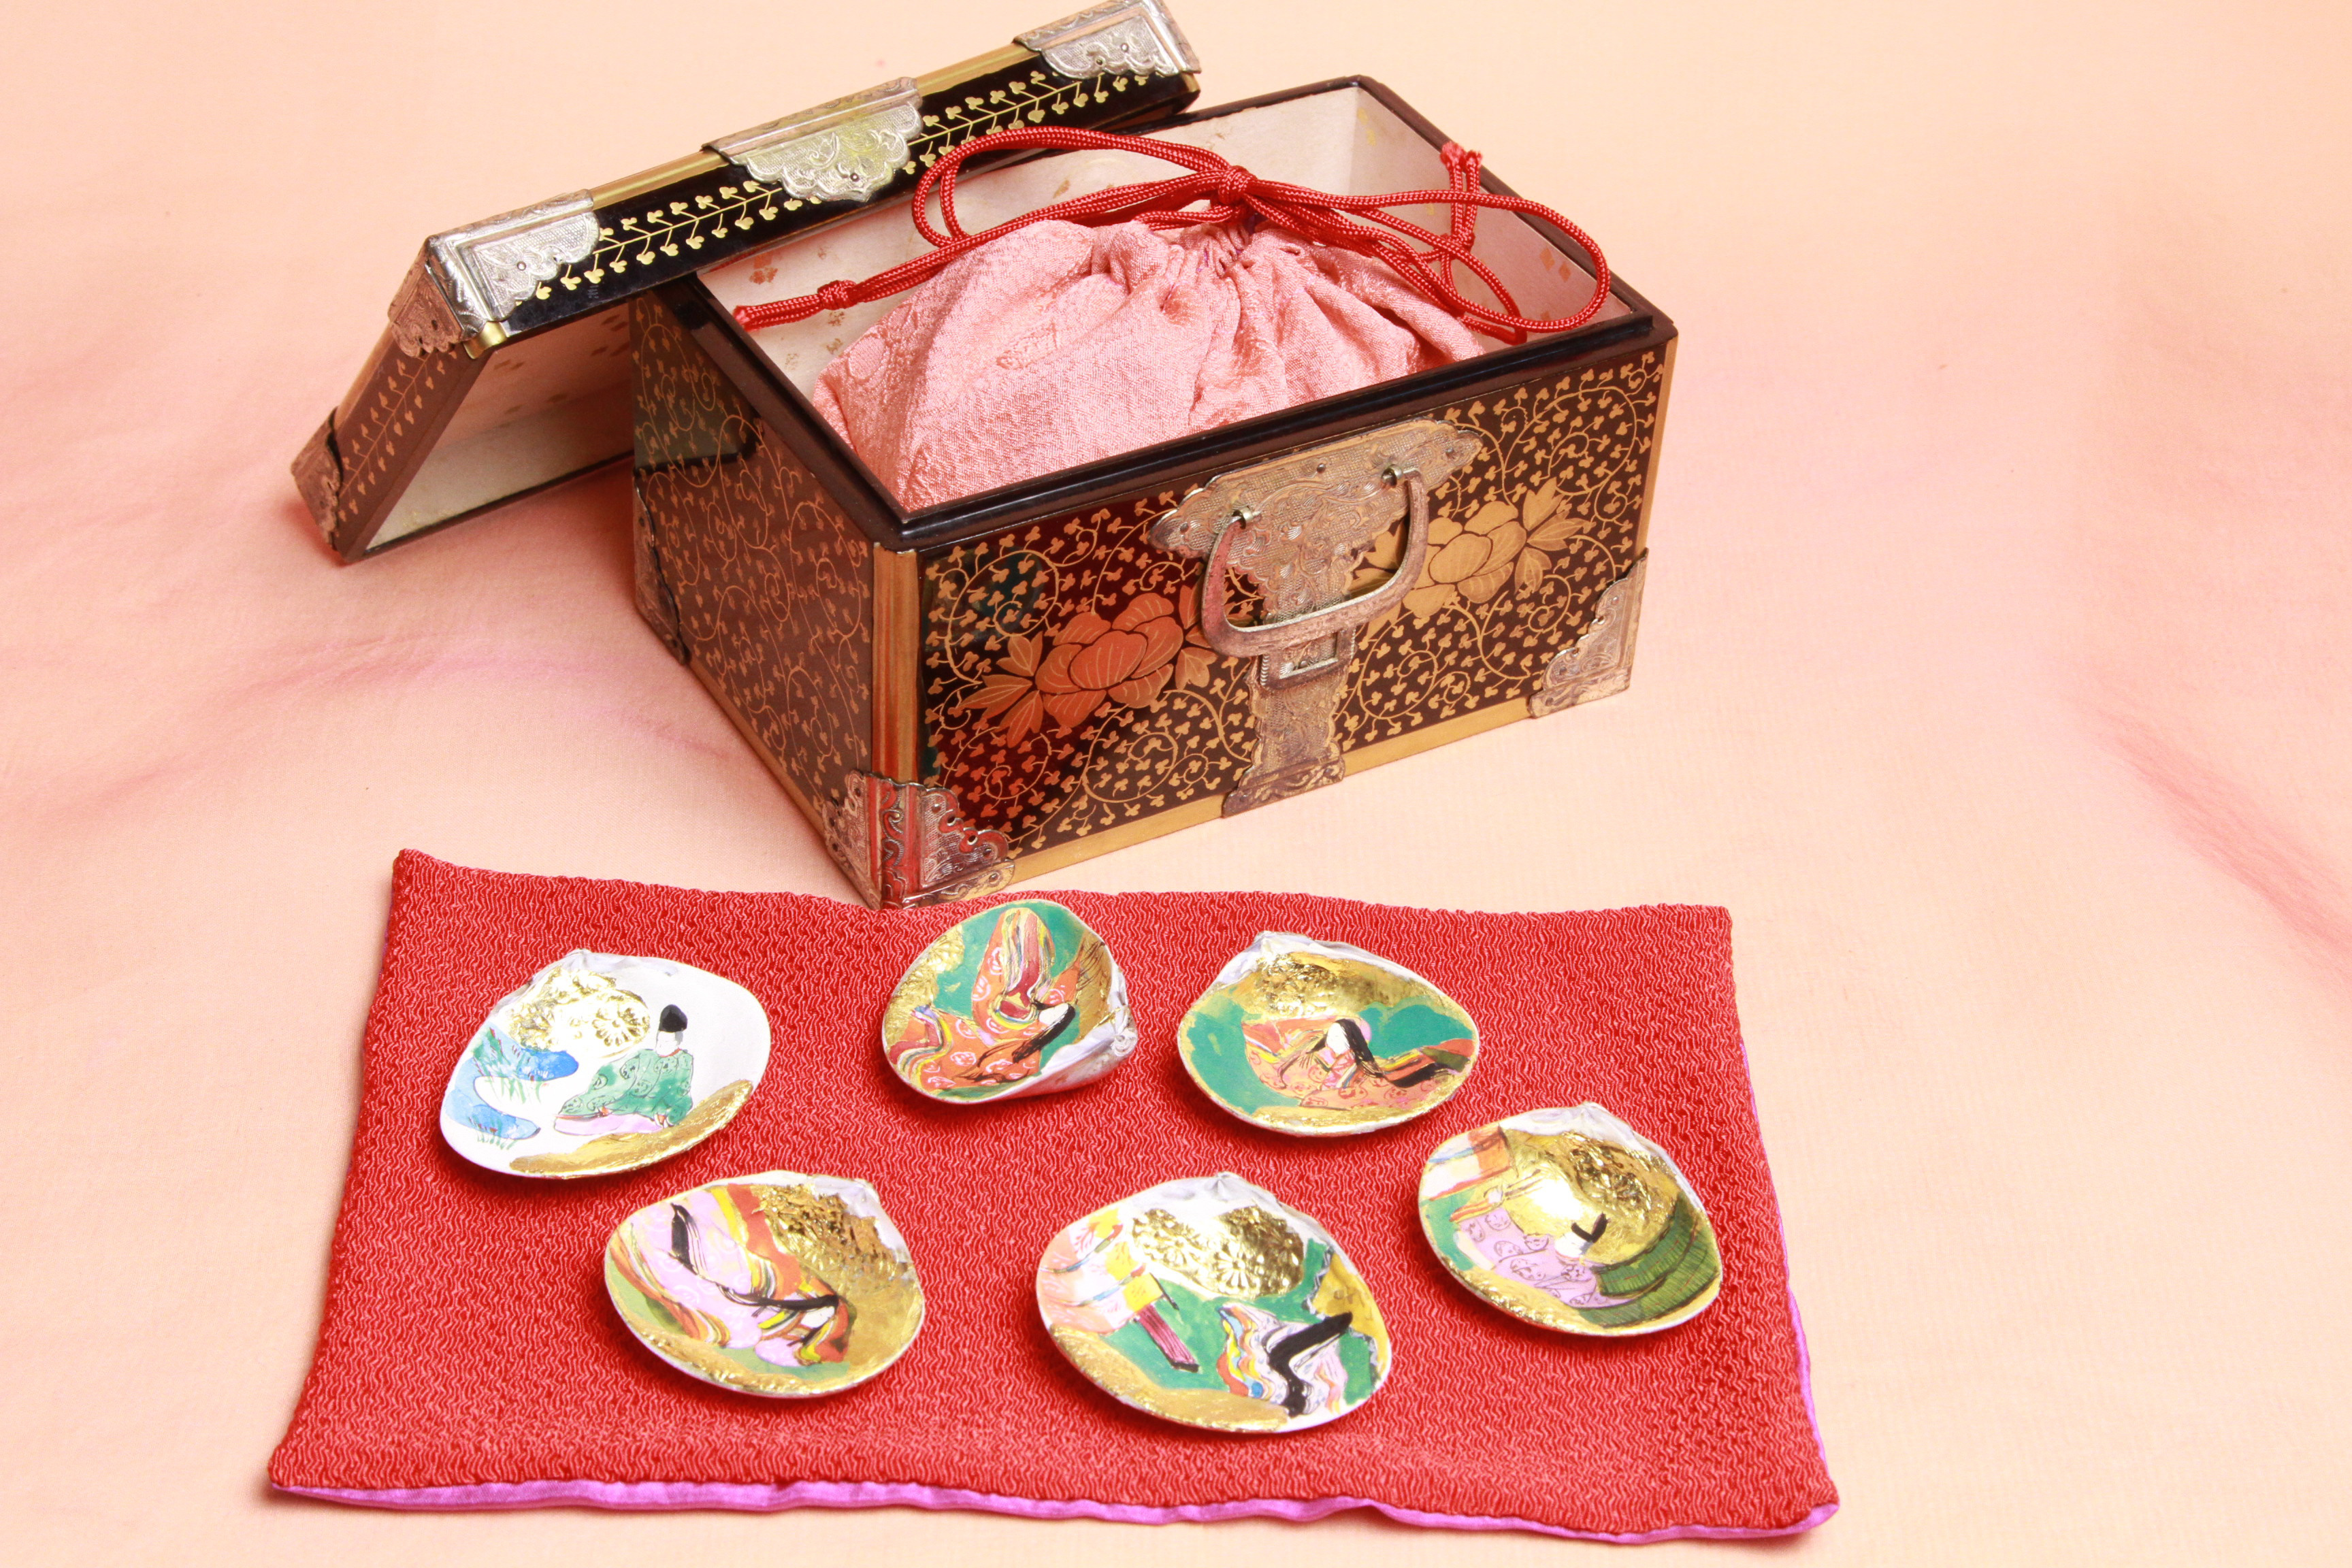 14，明治の小箱に、源氏物語絵巻貝合わせ３組を入れました。7.5万円